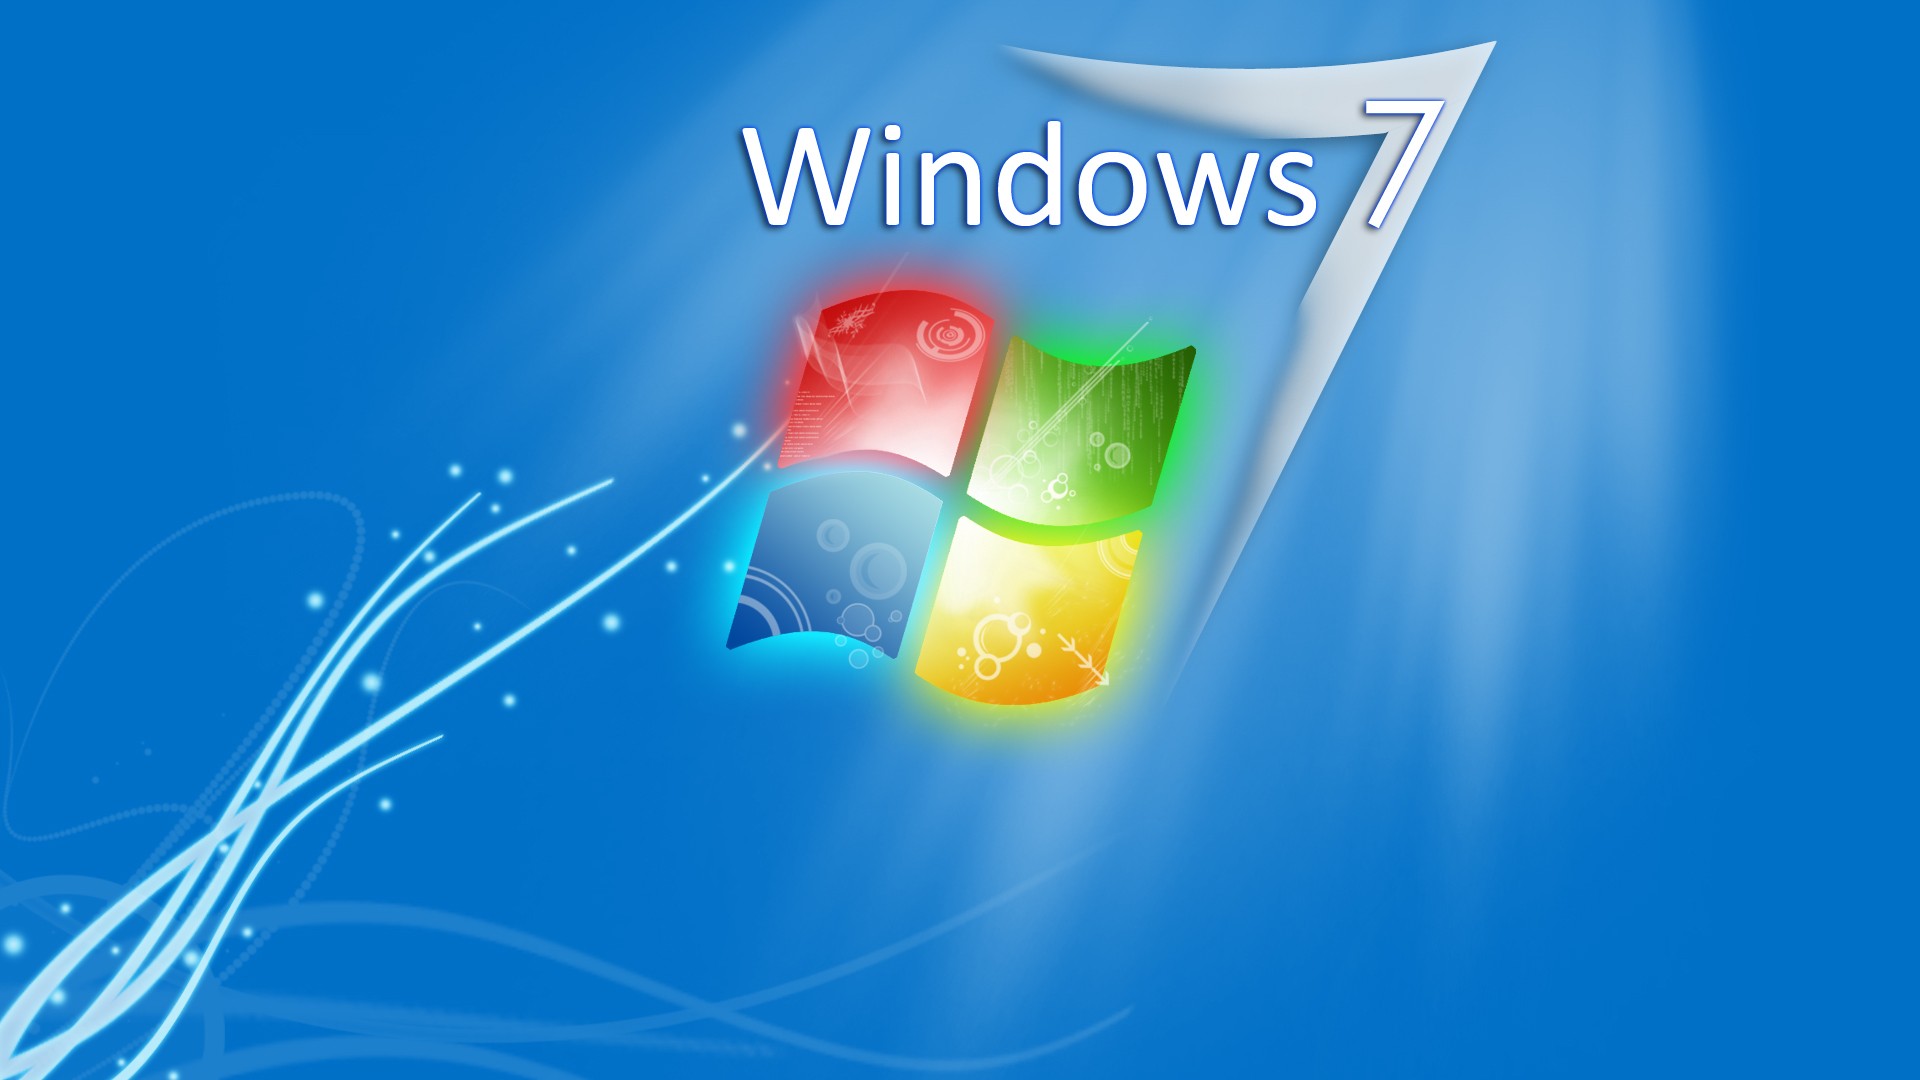 Заставки Для Рабочего Стола Windows 7 Скачать Бесплатно